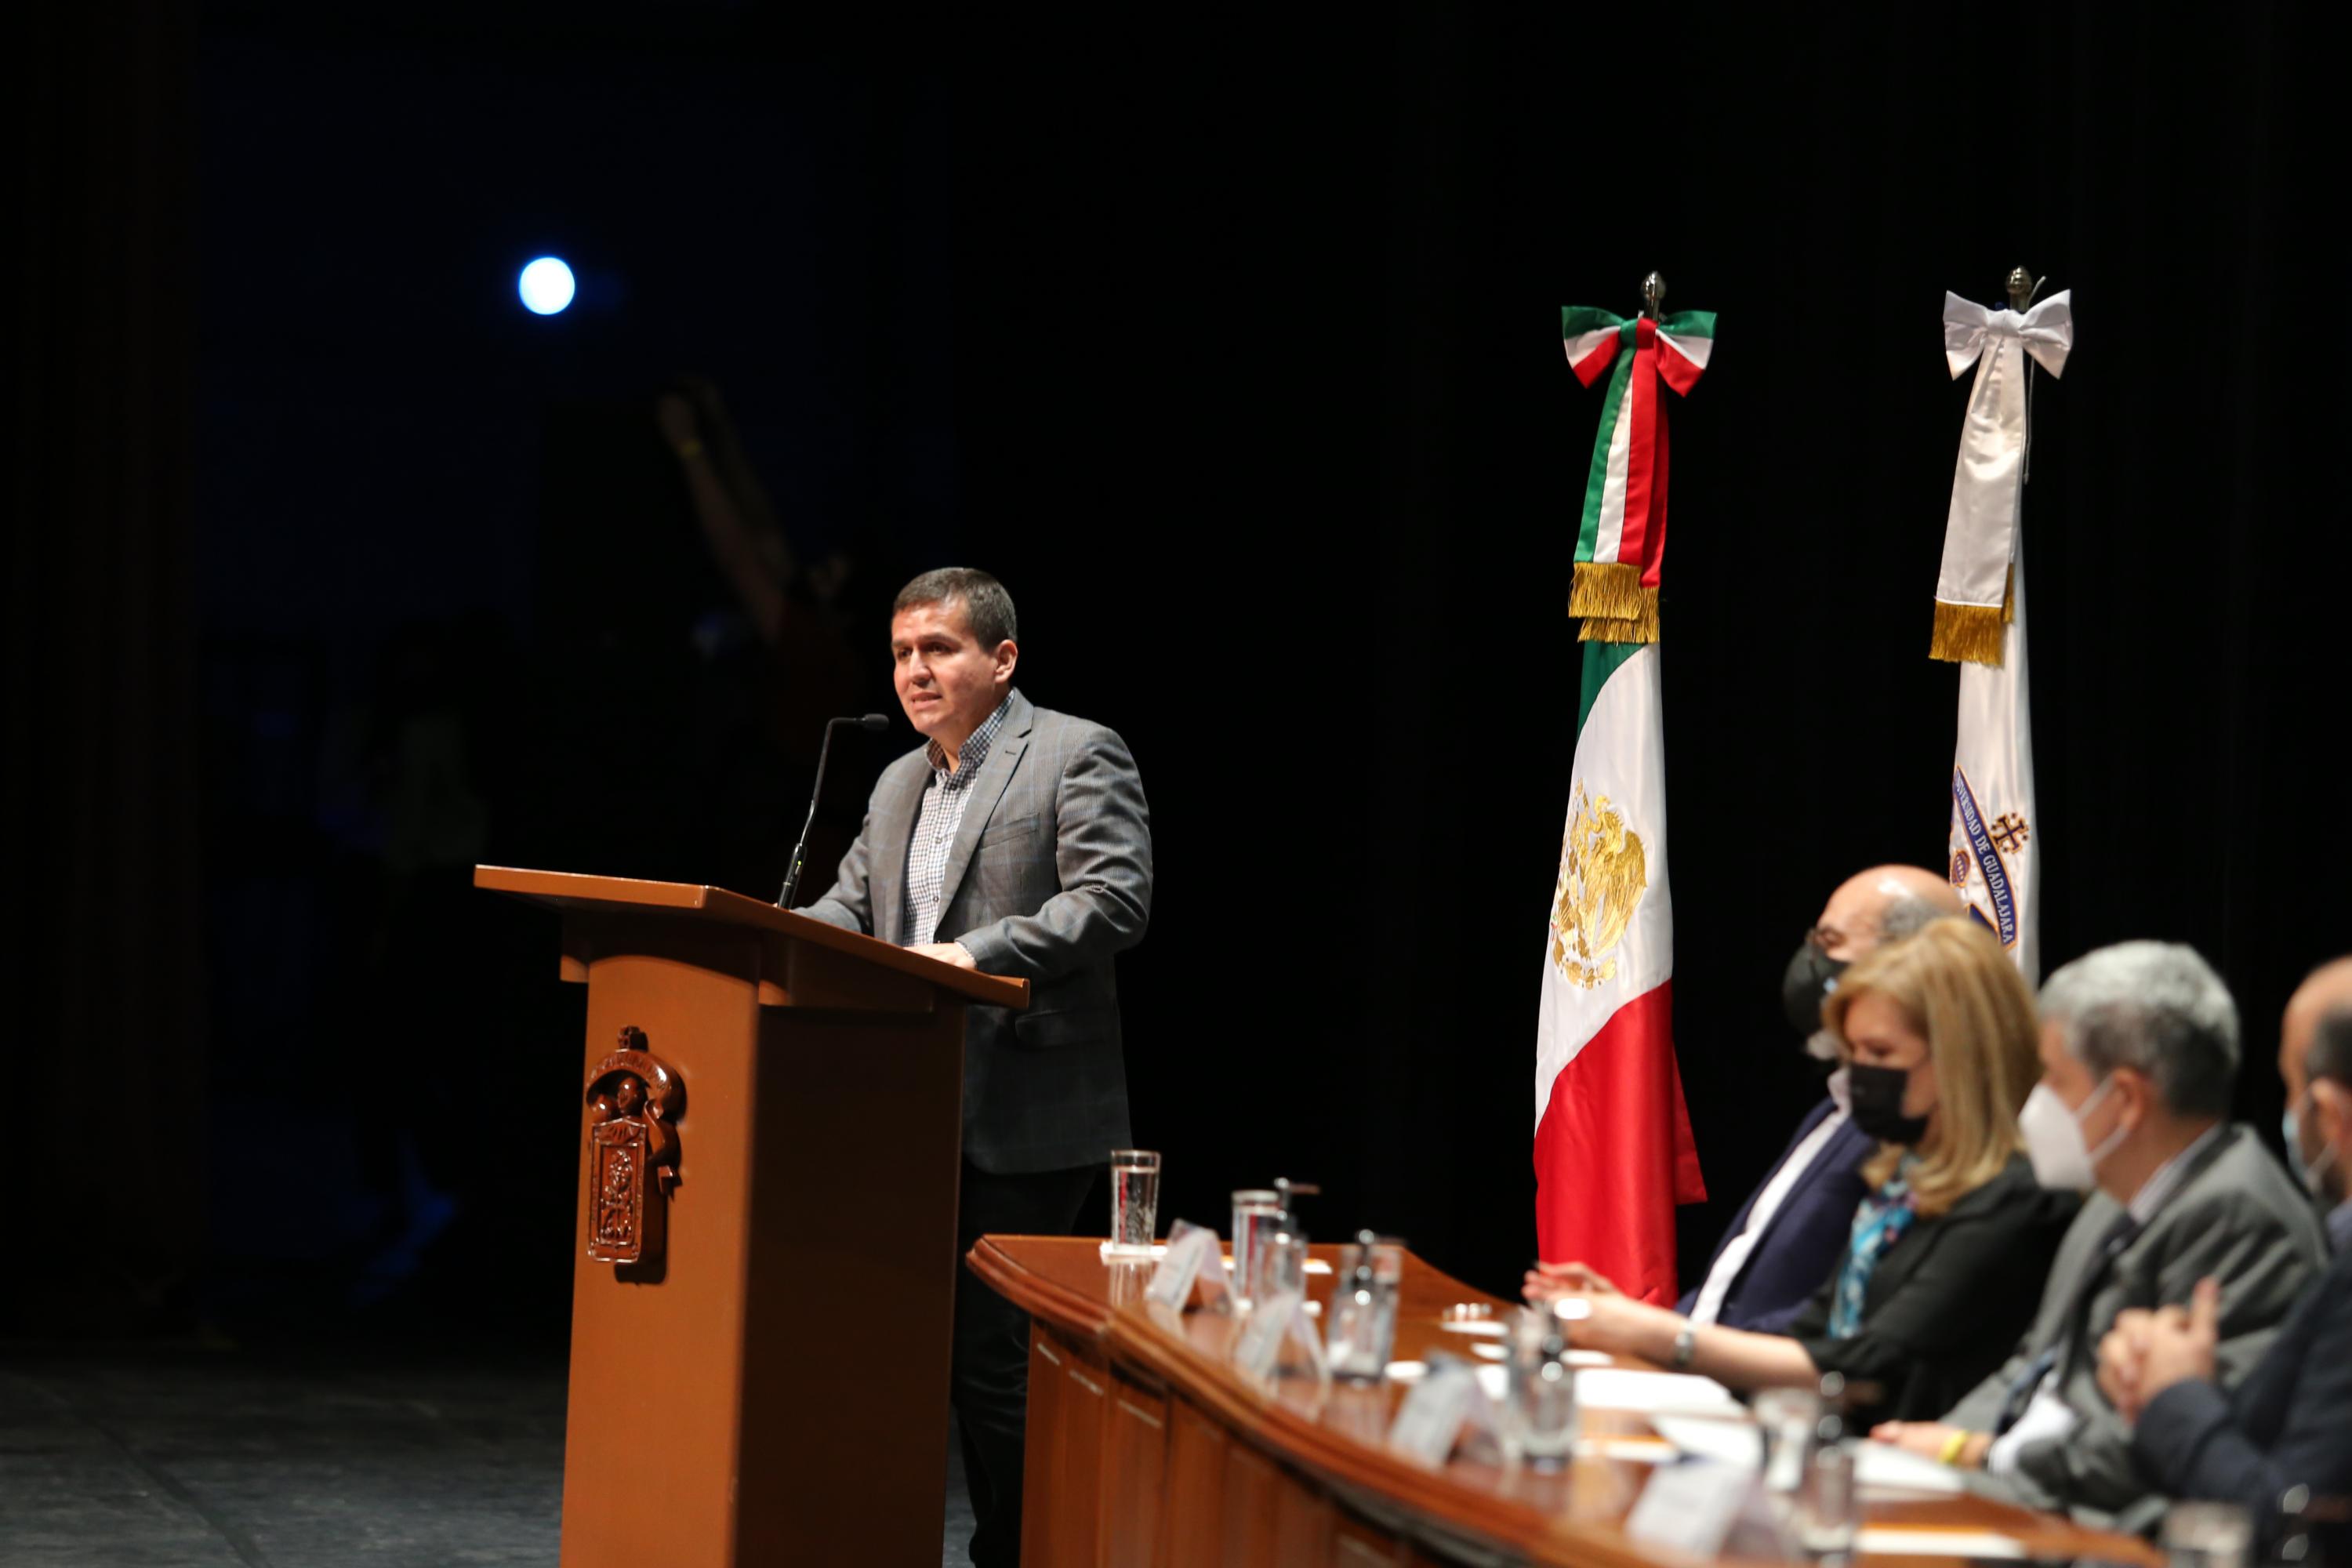 Autoridades universitarias reconocen su labor, en acto celebrado en Auditorio Telmex